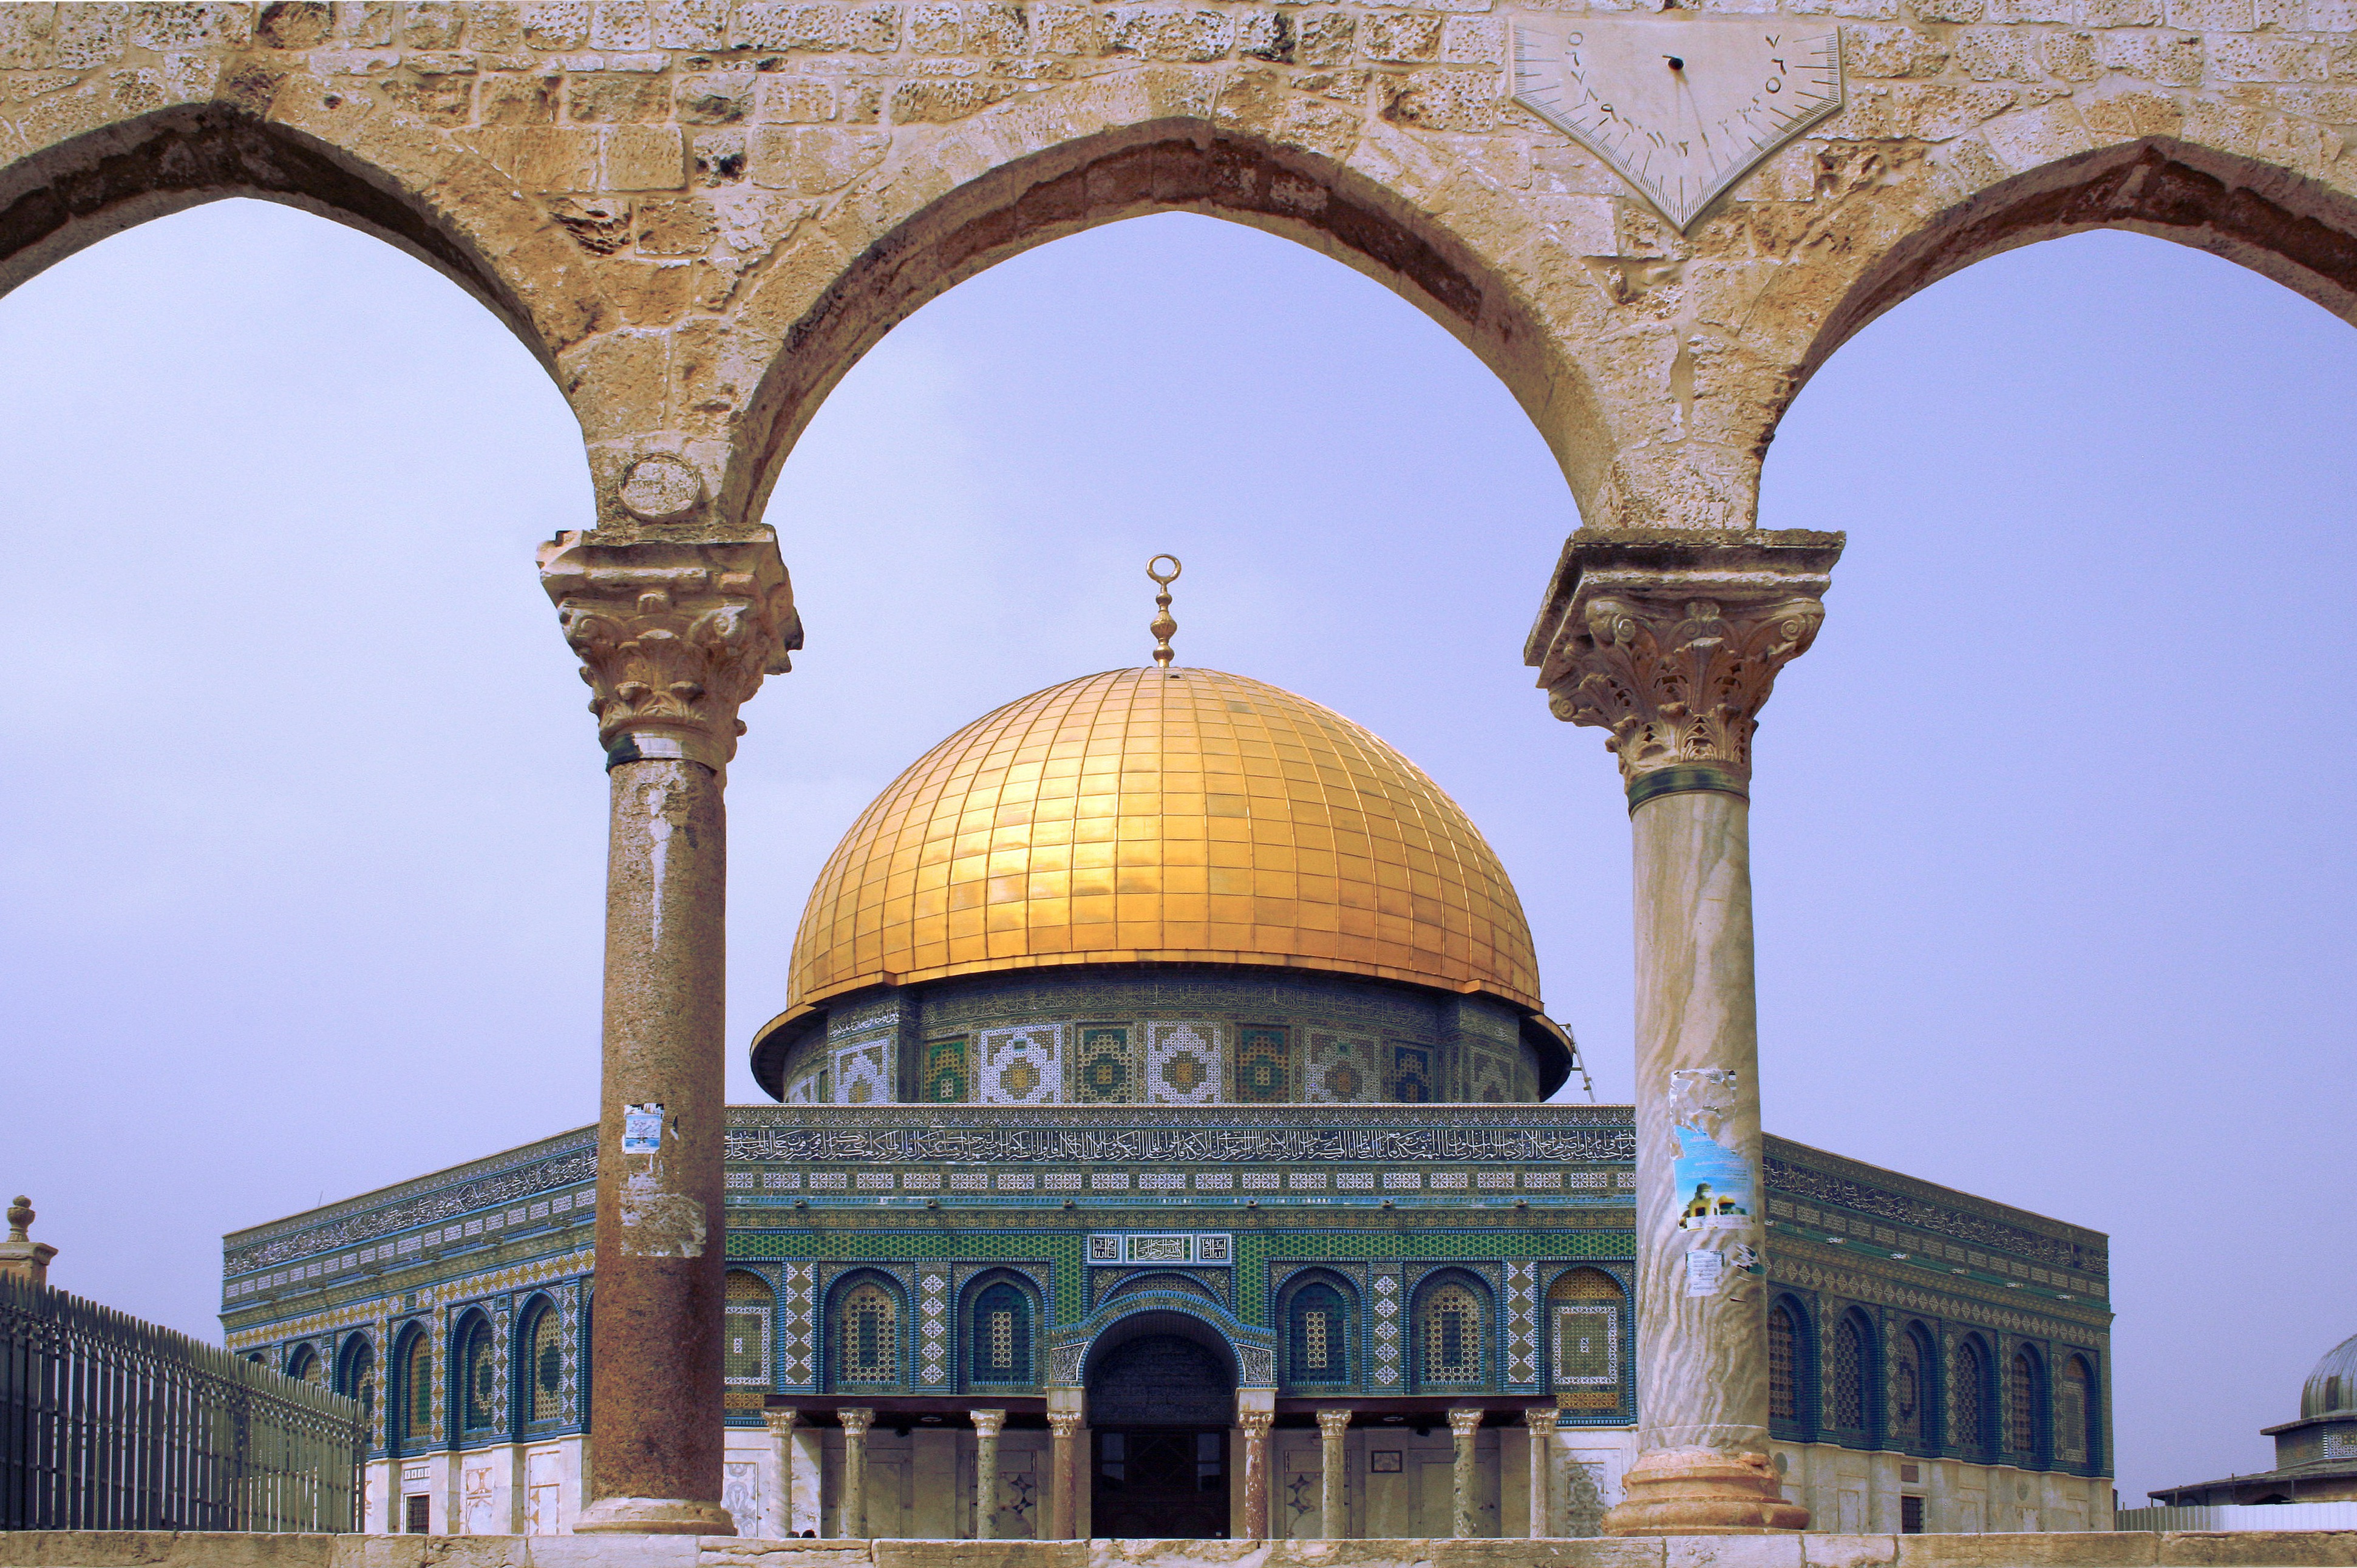 Al-mawazin next to the Dome of the Rock, Jerusalem4